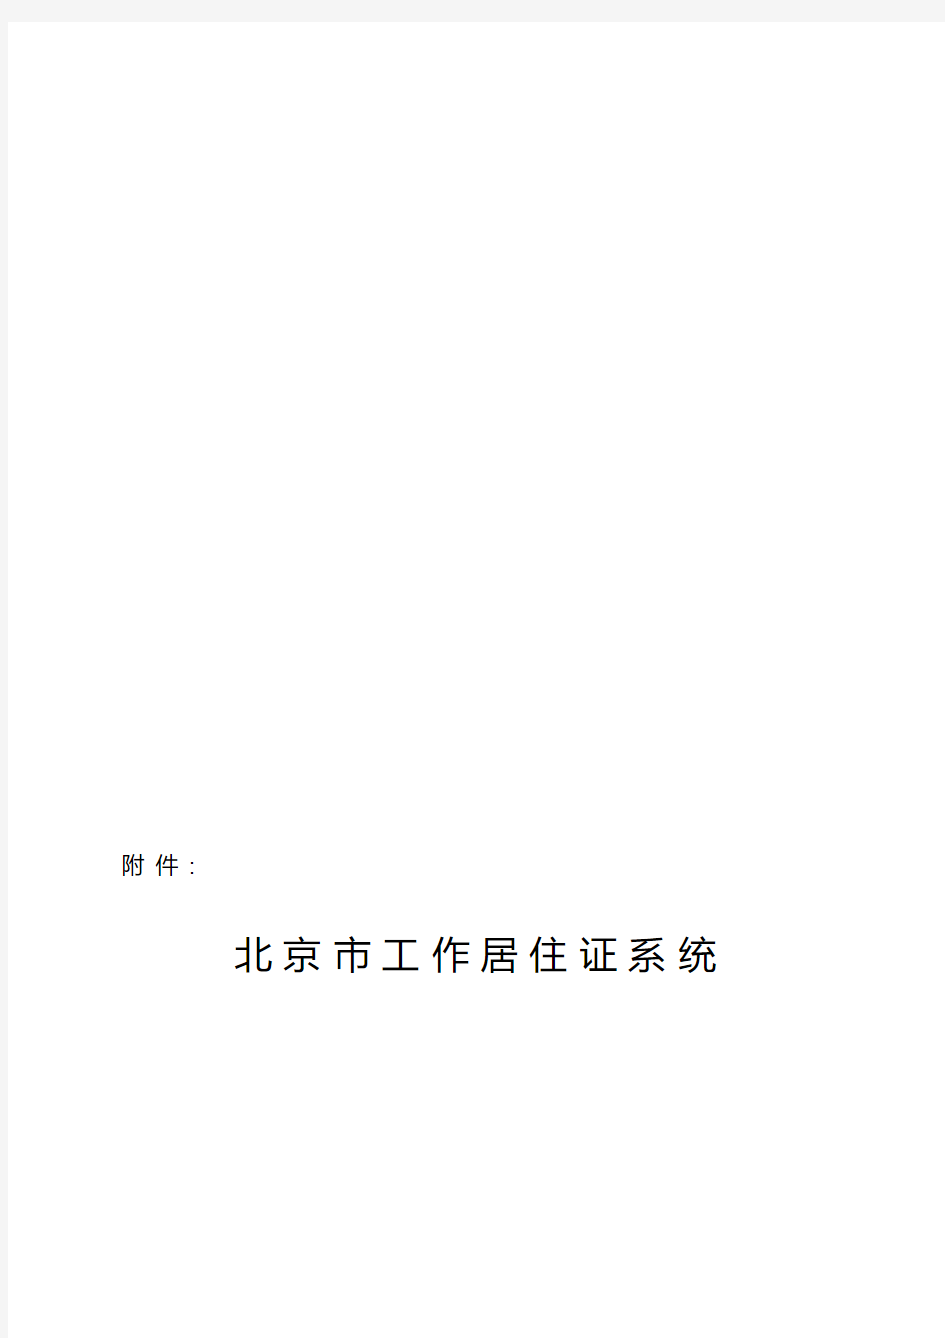 北京市工作居住证系统用户操作指南